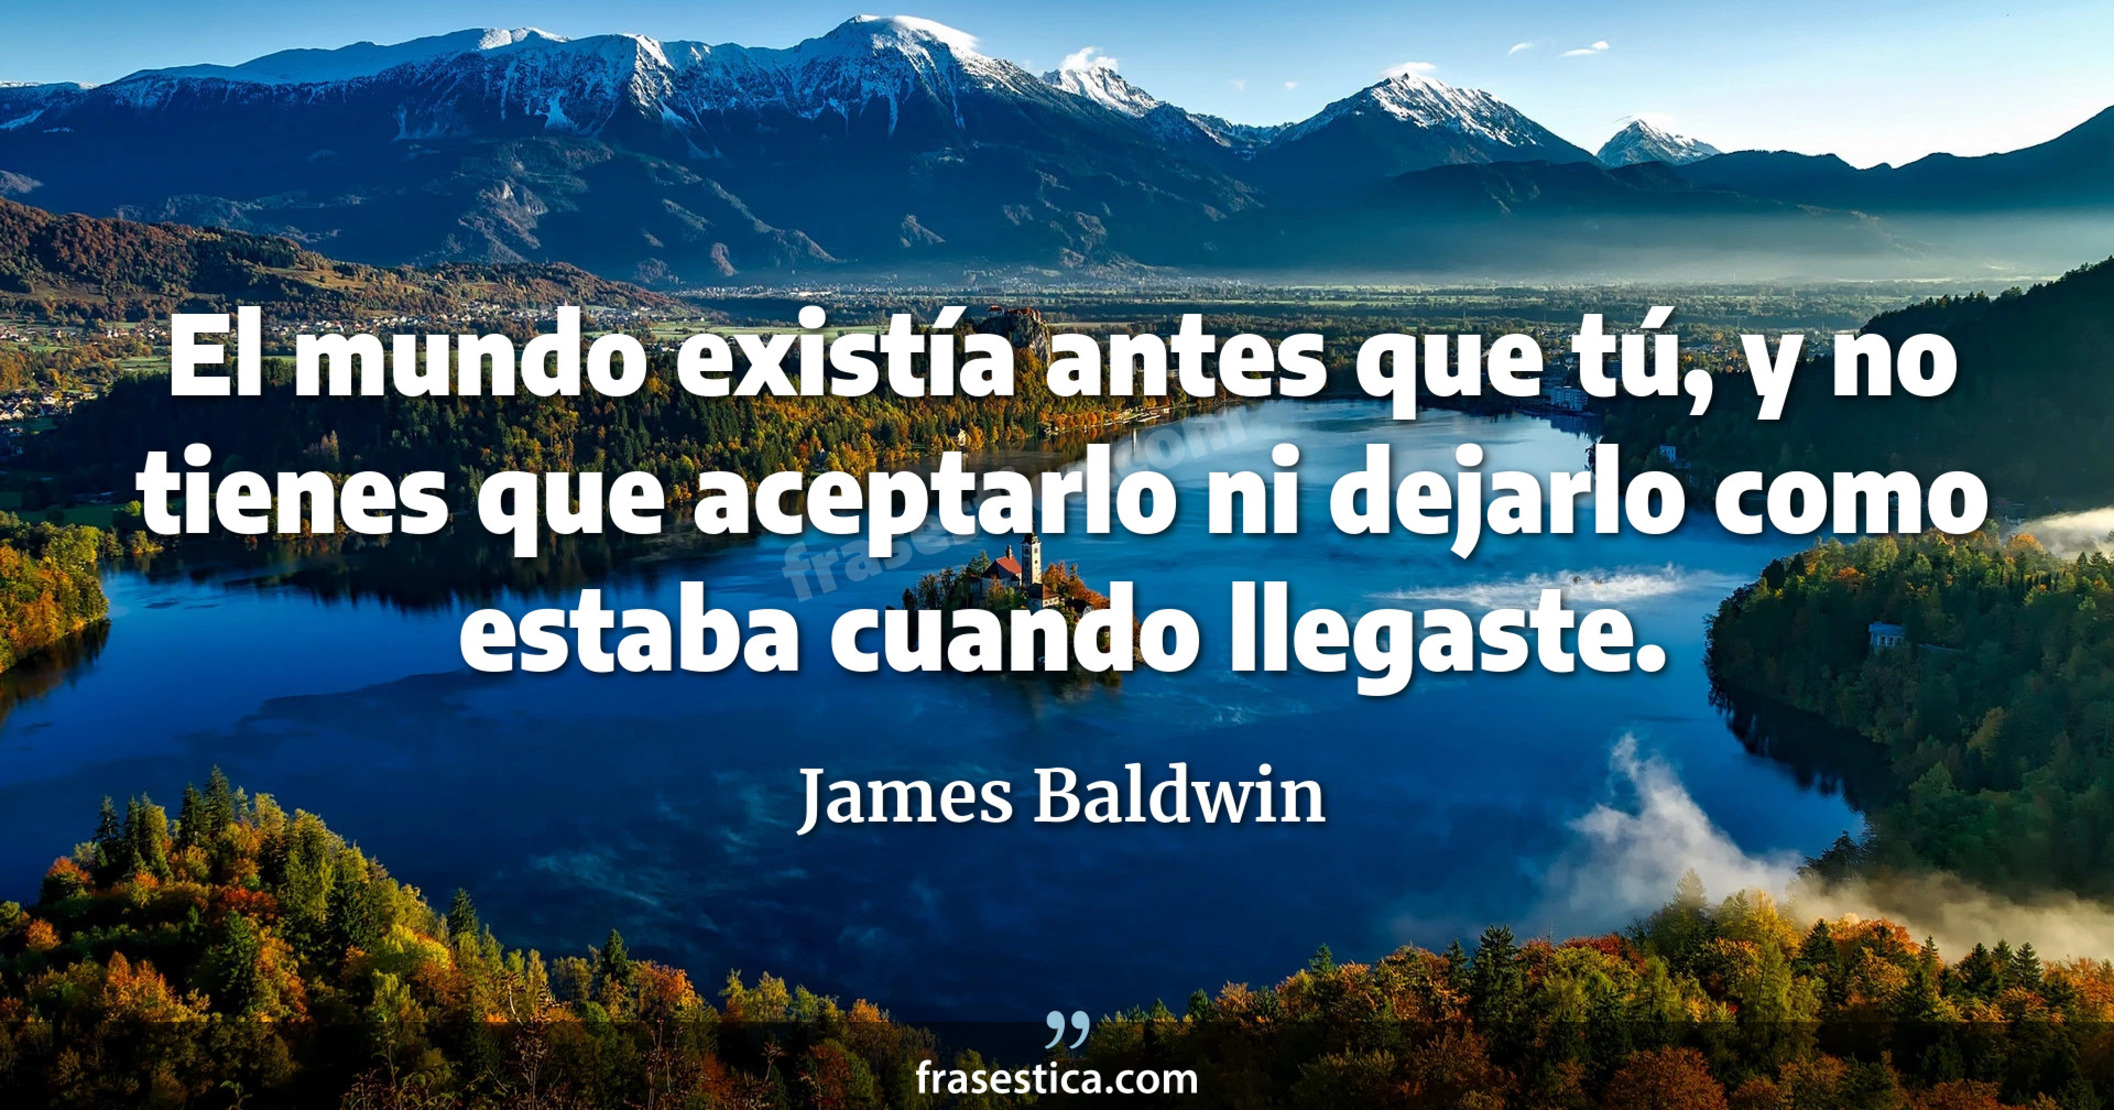 El mundo existía antes que tú, y no tienes que aceptarlo ni dejarlo como estaba cuando llegaste. - James Baldwin